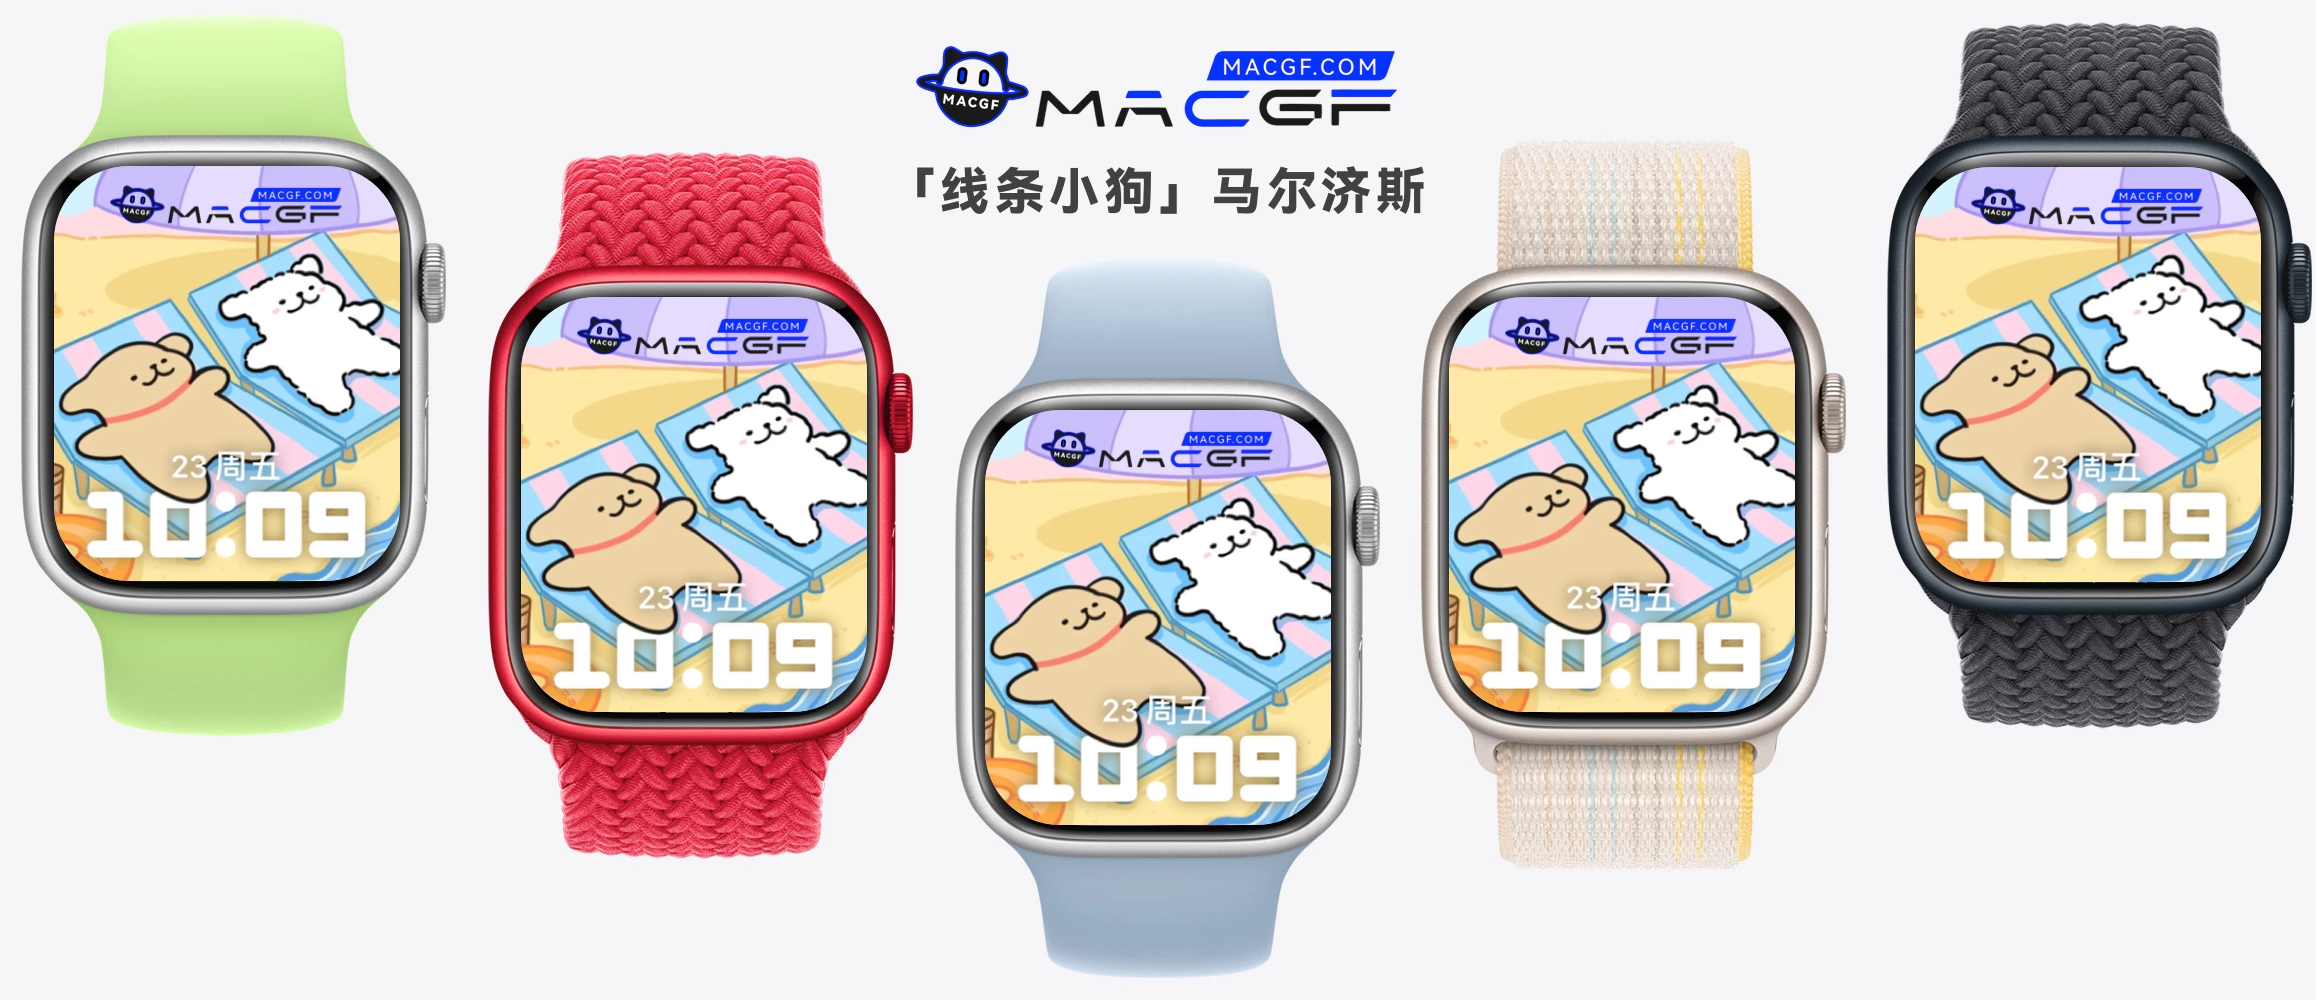 「线条小狗」马尔济斯 Apple watch 精美原生表盘 - MACGF